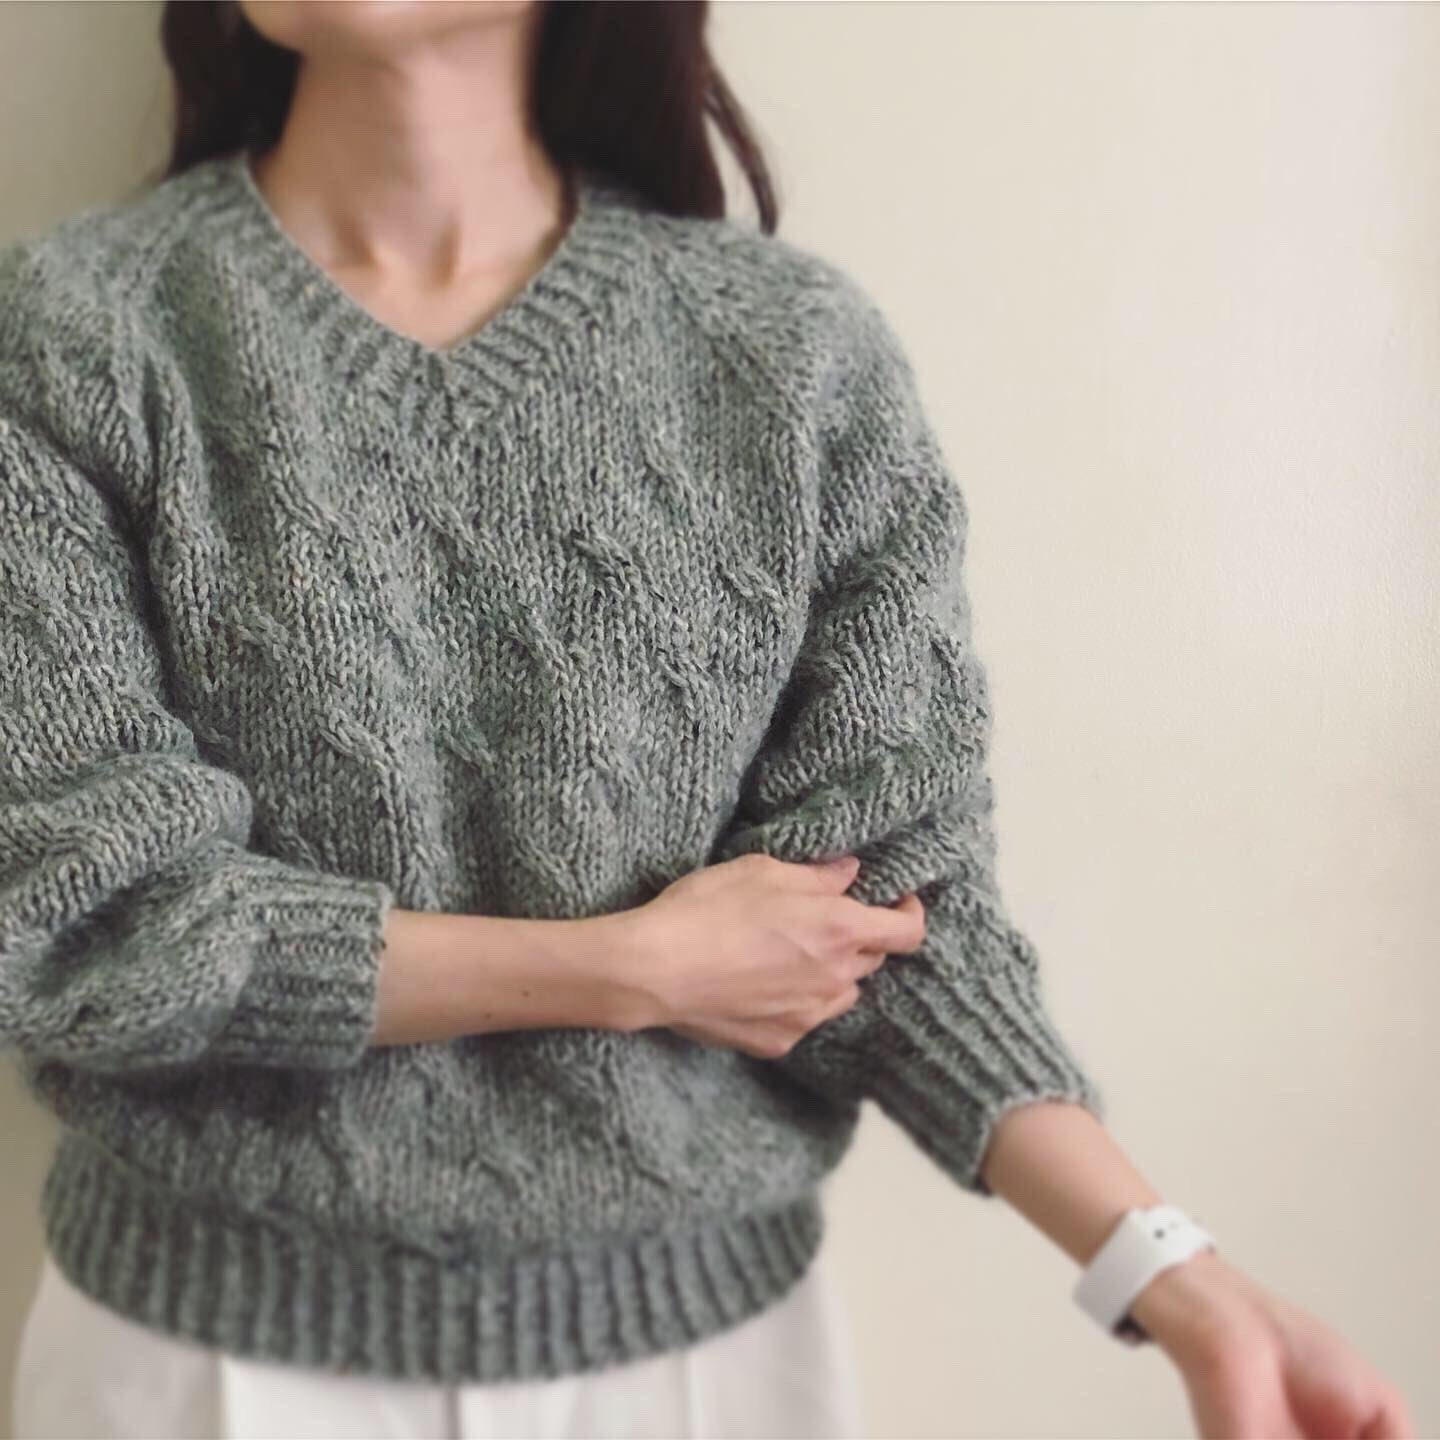 販売販売中 Fynオリジナルデザインのセーターのキット 生地/糸